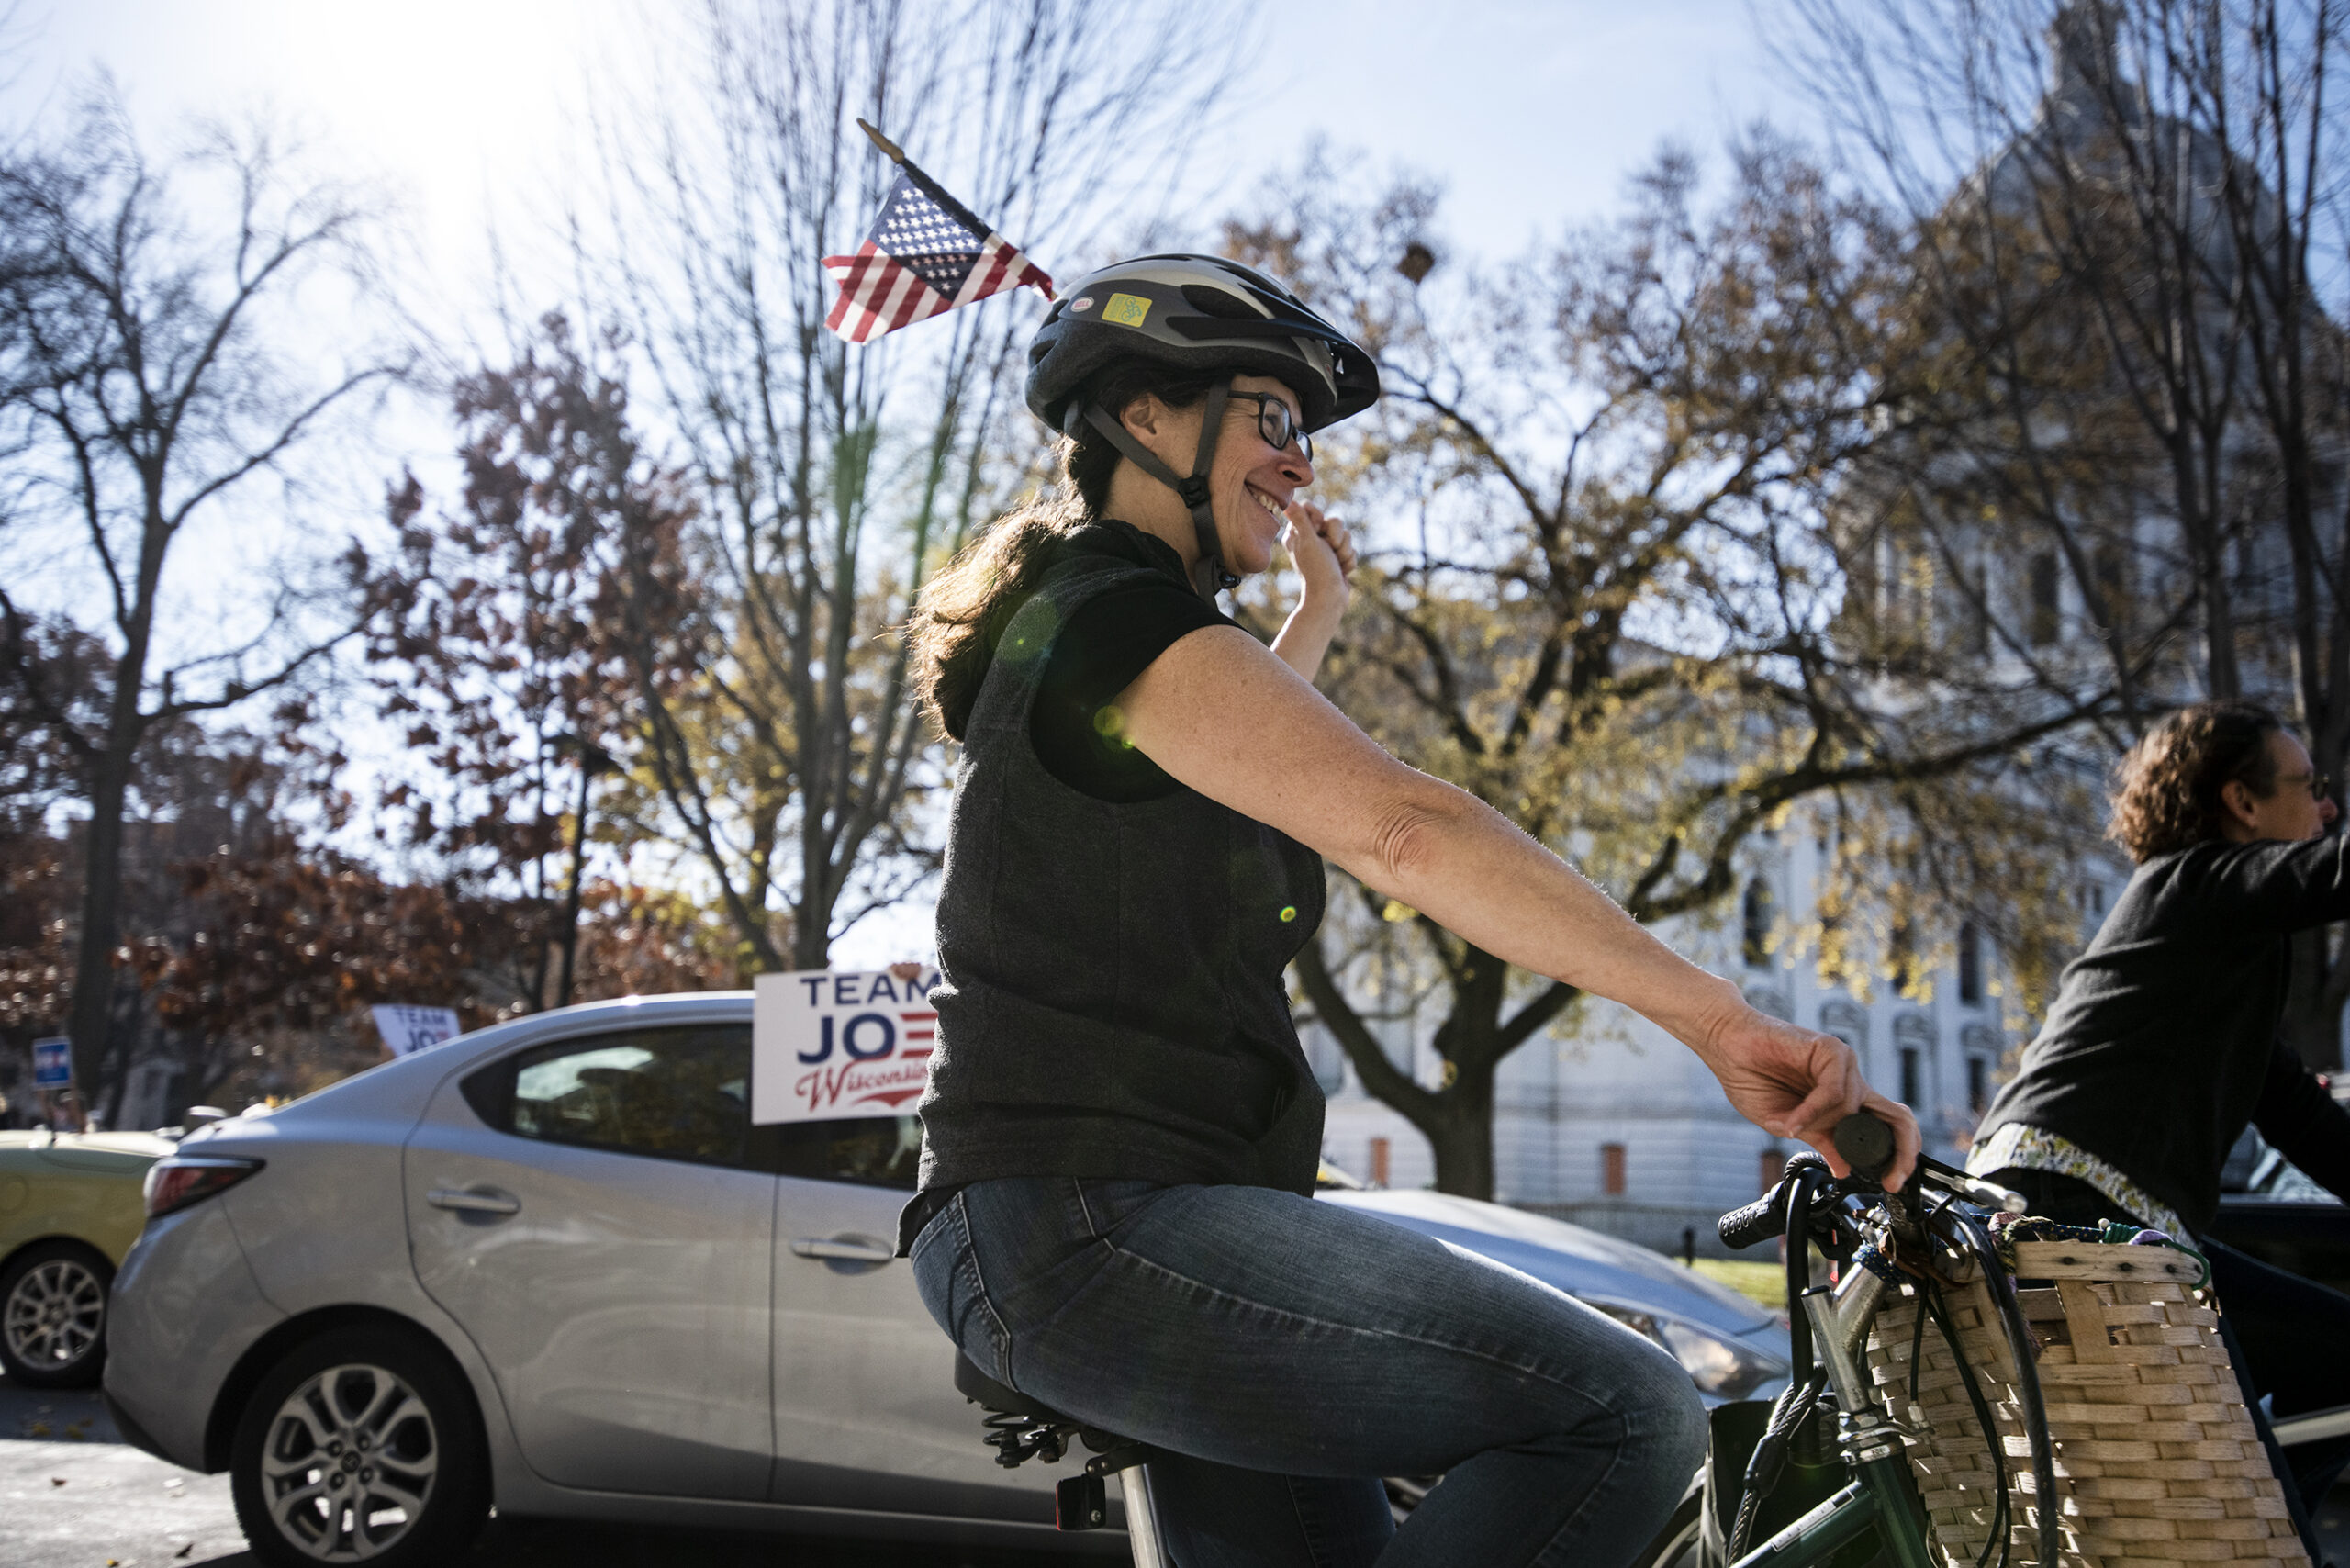 a woman on a bike smiles as she waves a U.S. flag